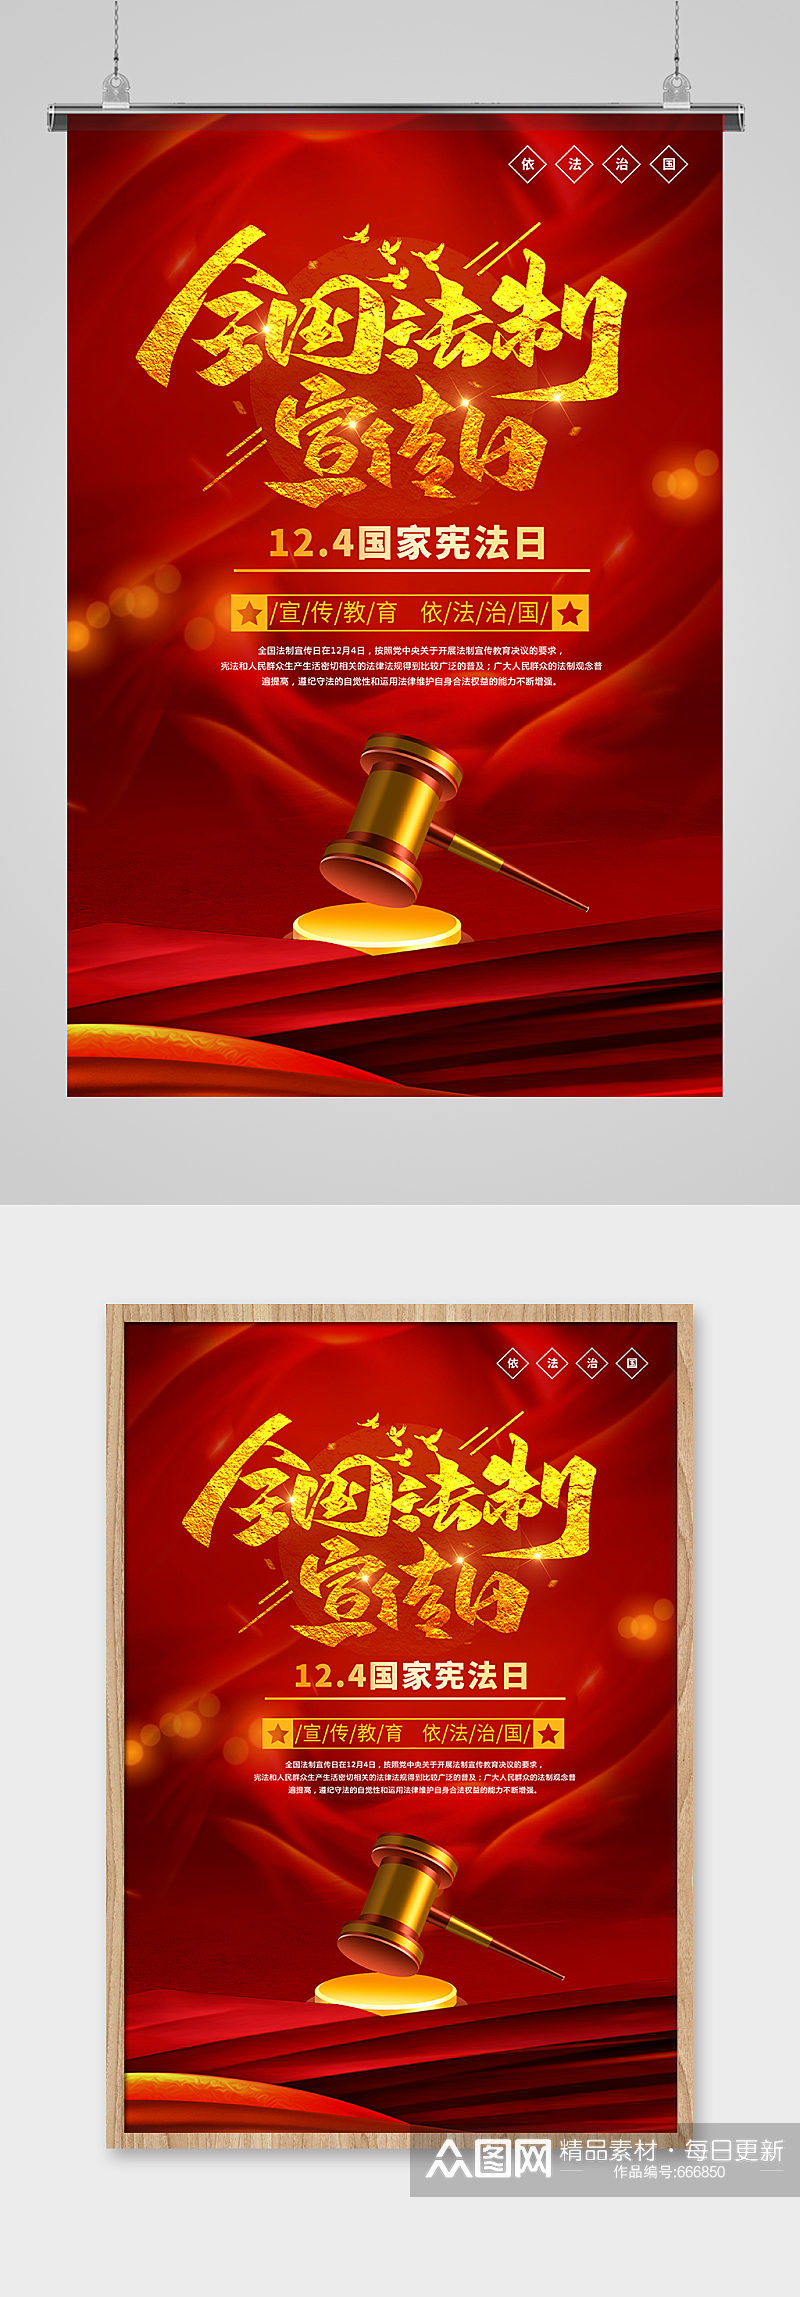 全国法制宣传日l国家宪法日红色系简约法治海报素材